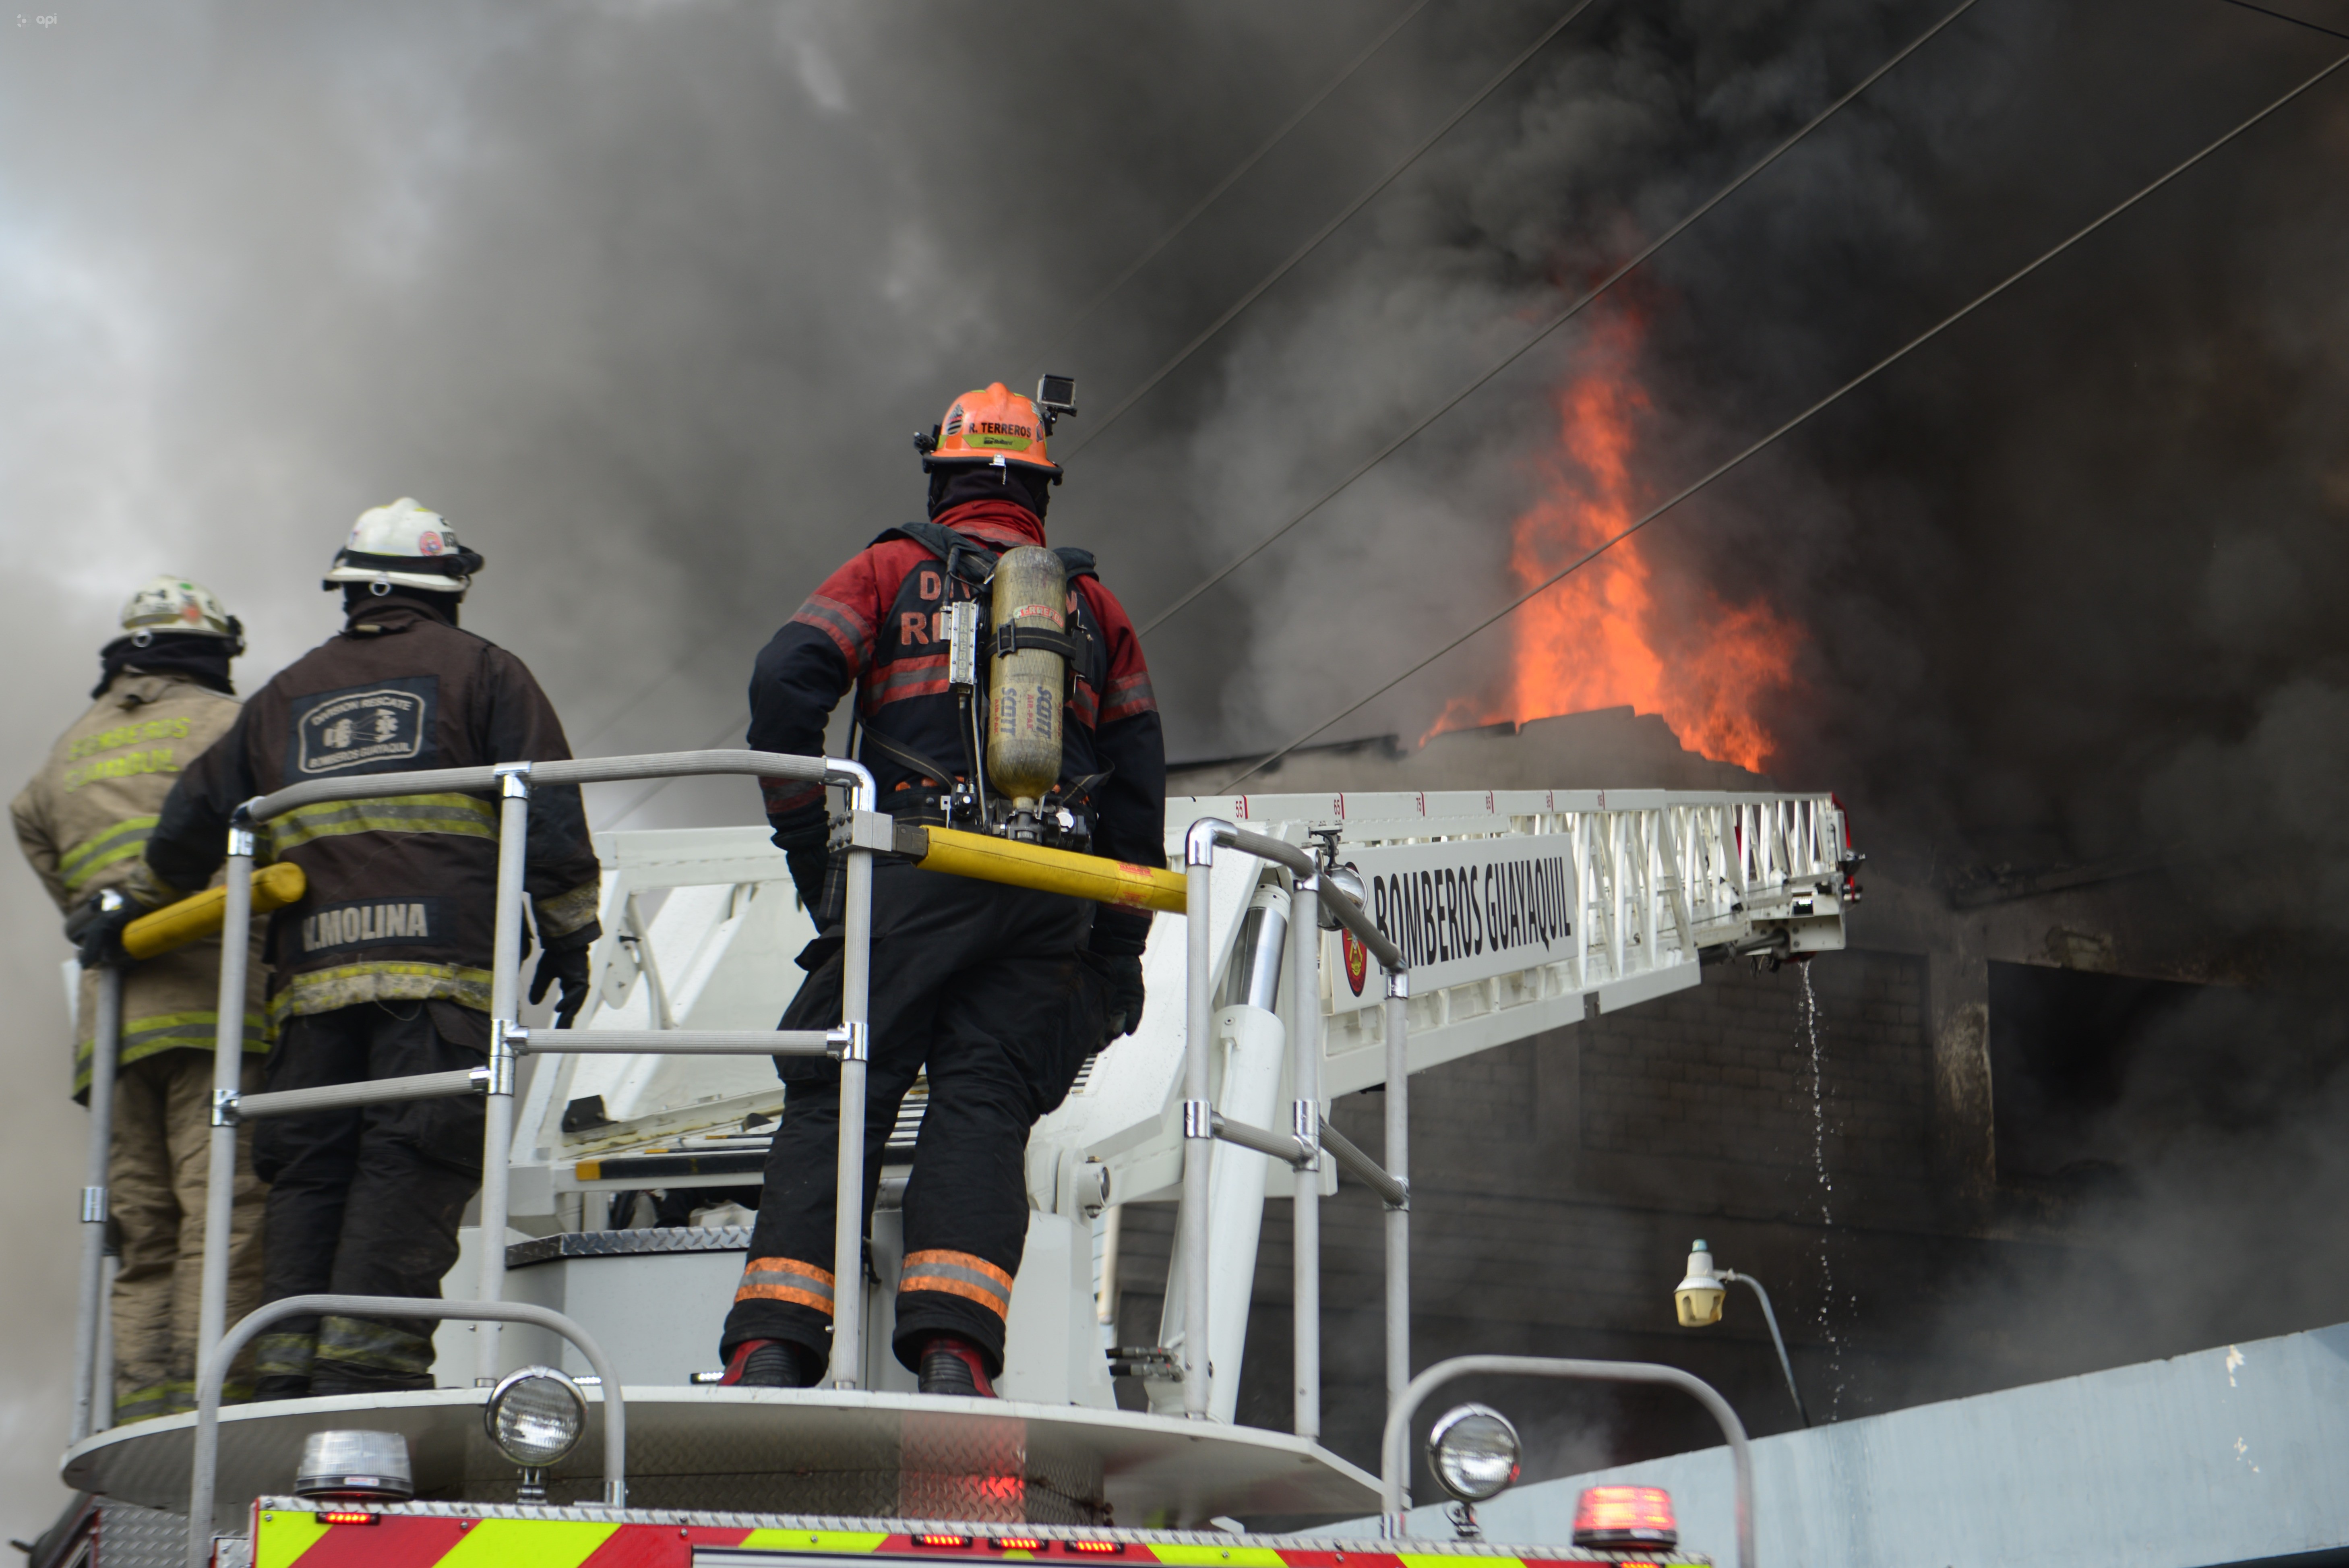 Bomberos sofocan voraz incendio en una bodega de Guayaquil